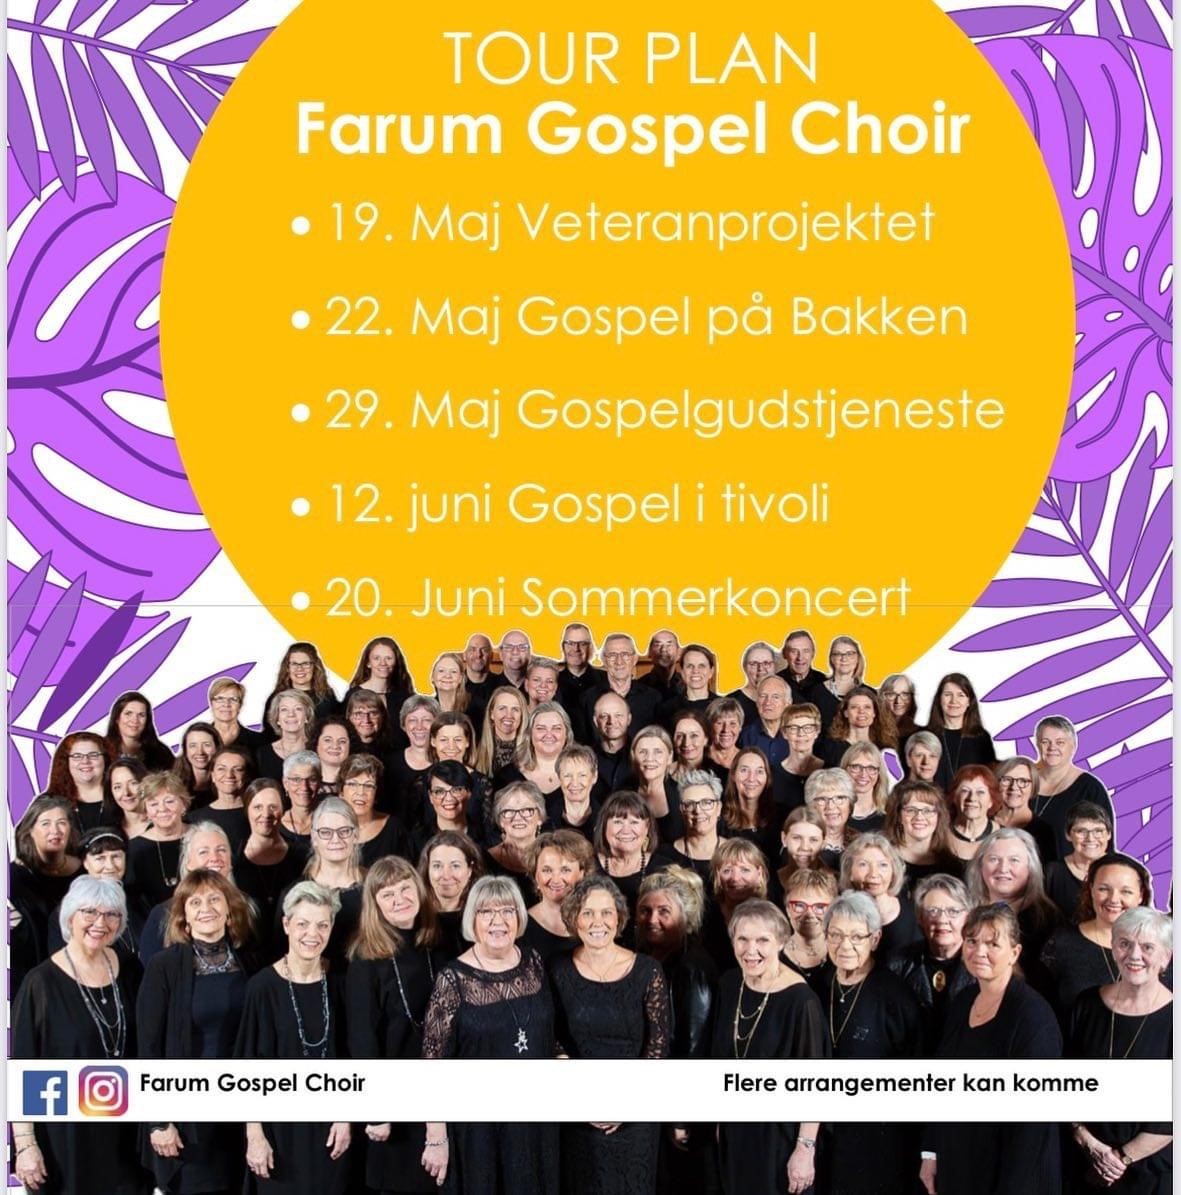 Oplev Farum Gospel Choir live